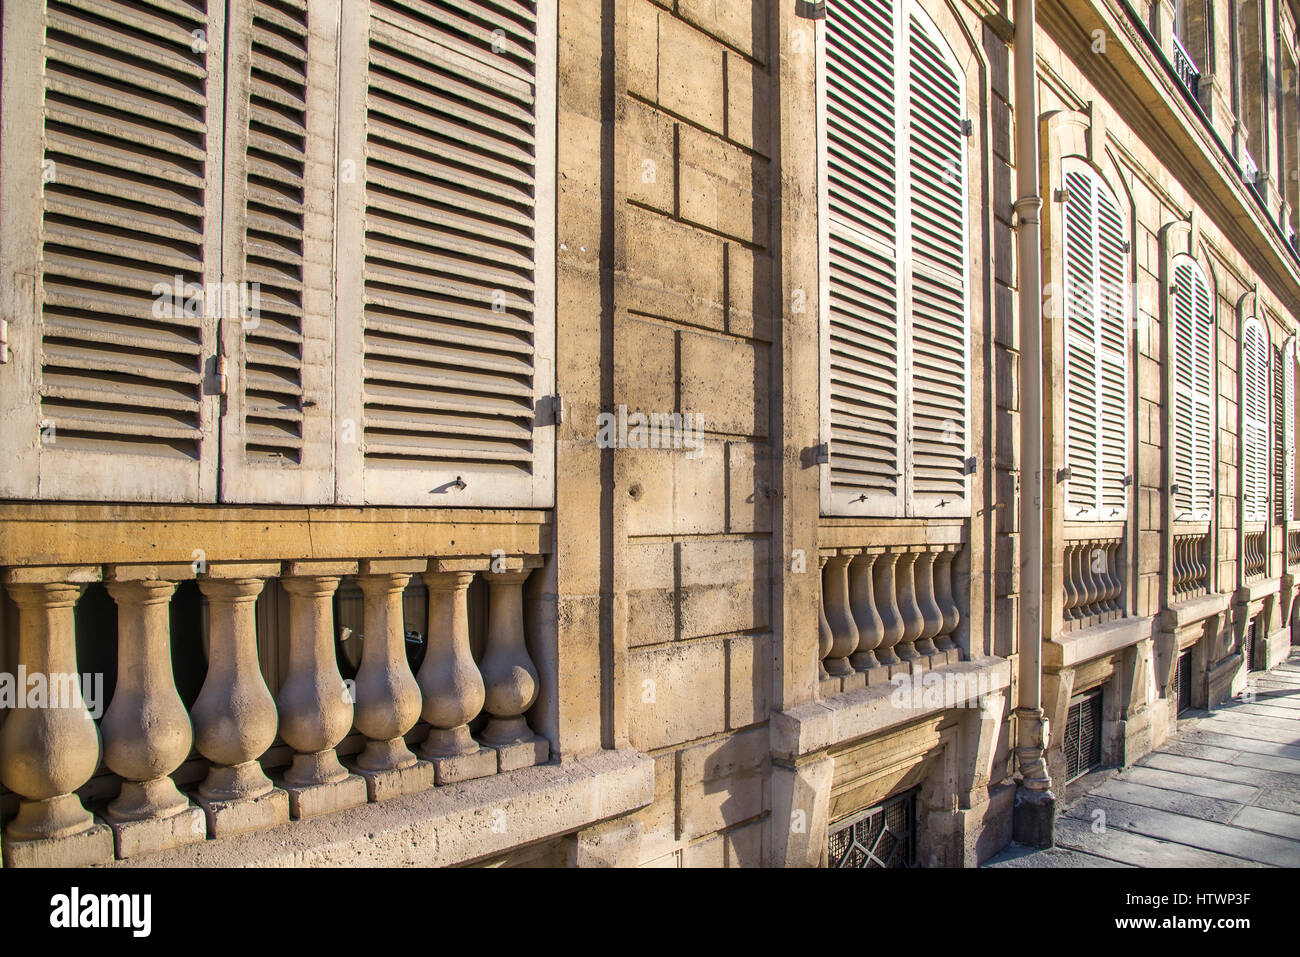 Geschlossenen weißen Fensterläden auf vasenförmige Geländerstäbe werden erwärmt durch den späten Tag Sonnenlicht auf ein altes Gebäude in Paris Frankreich. Stockfoto